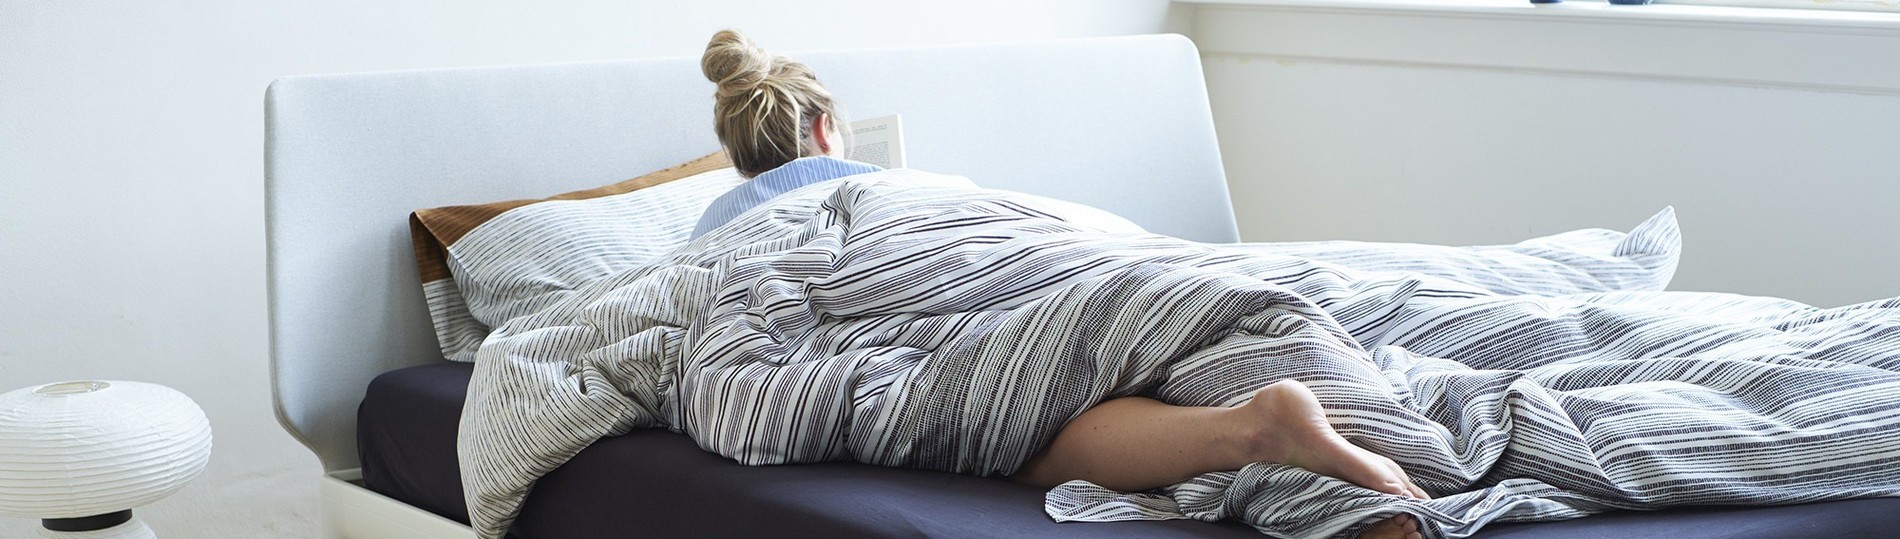 De juiste matras voor jouw nek- en rugklachten